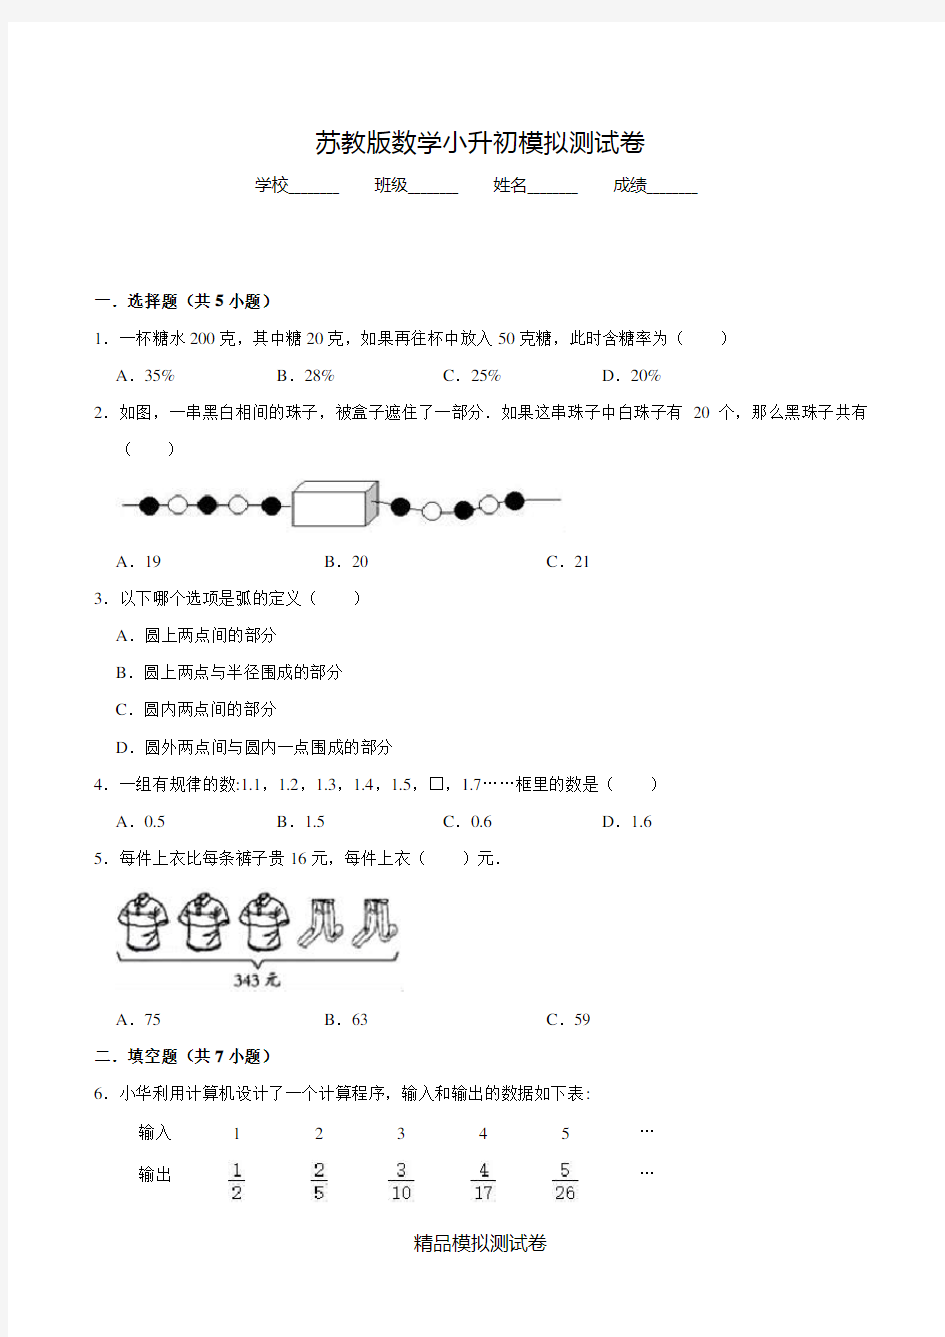 【苏教版】小升初数学冲刺模拟卷(含答案)